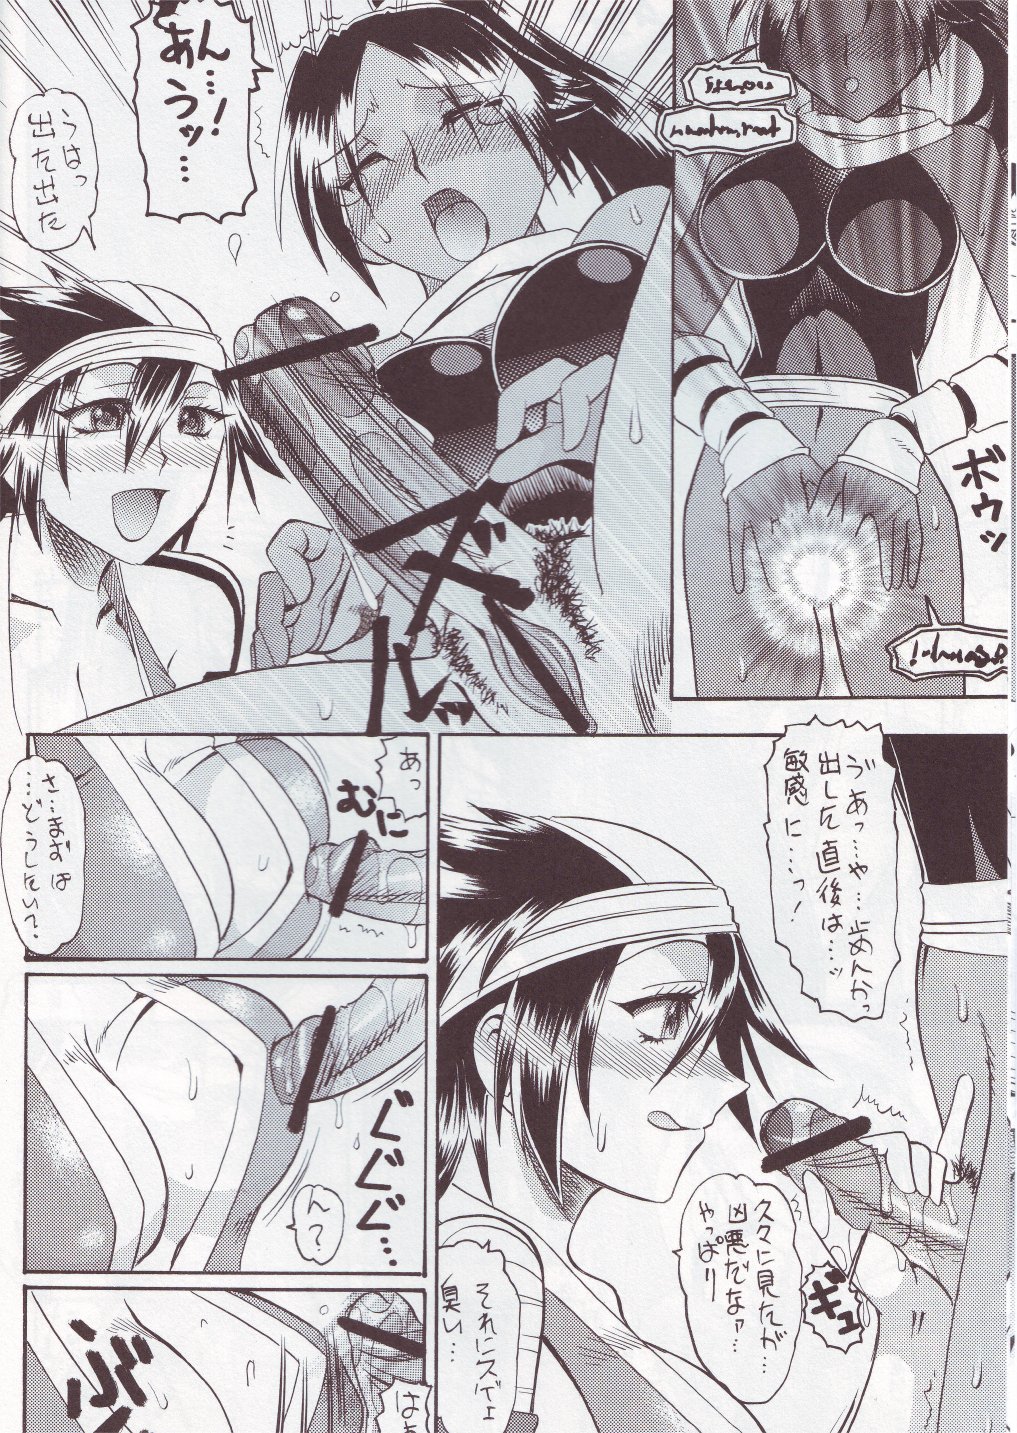 [SEMEDAIN G (Mizutani Mint, Mokkouyou Bond)] SEMEDAIN G WORKS vol.24 - Shuukan Shounen Jump Hon 4 (Bleach, One Piece) page 7 full